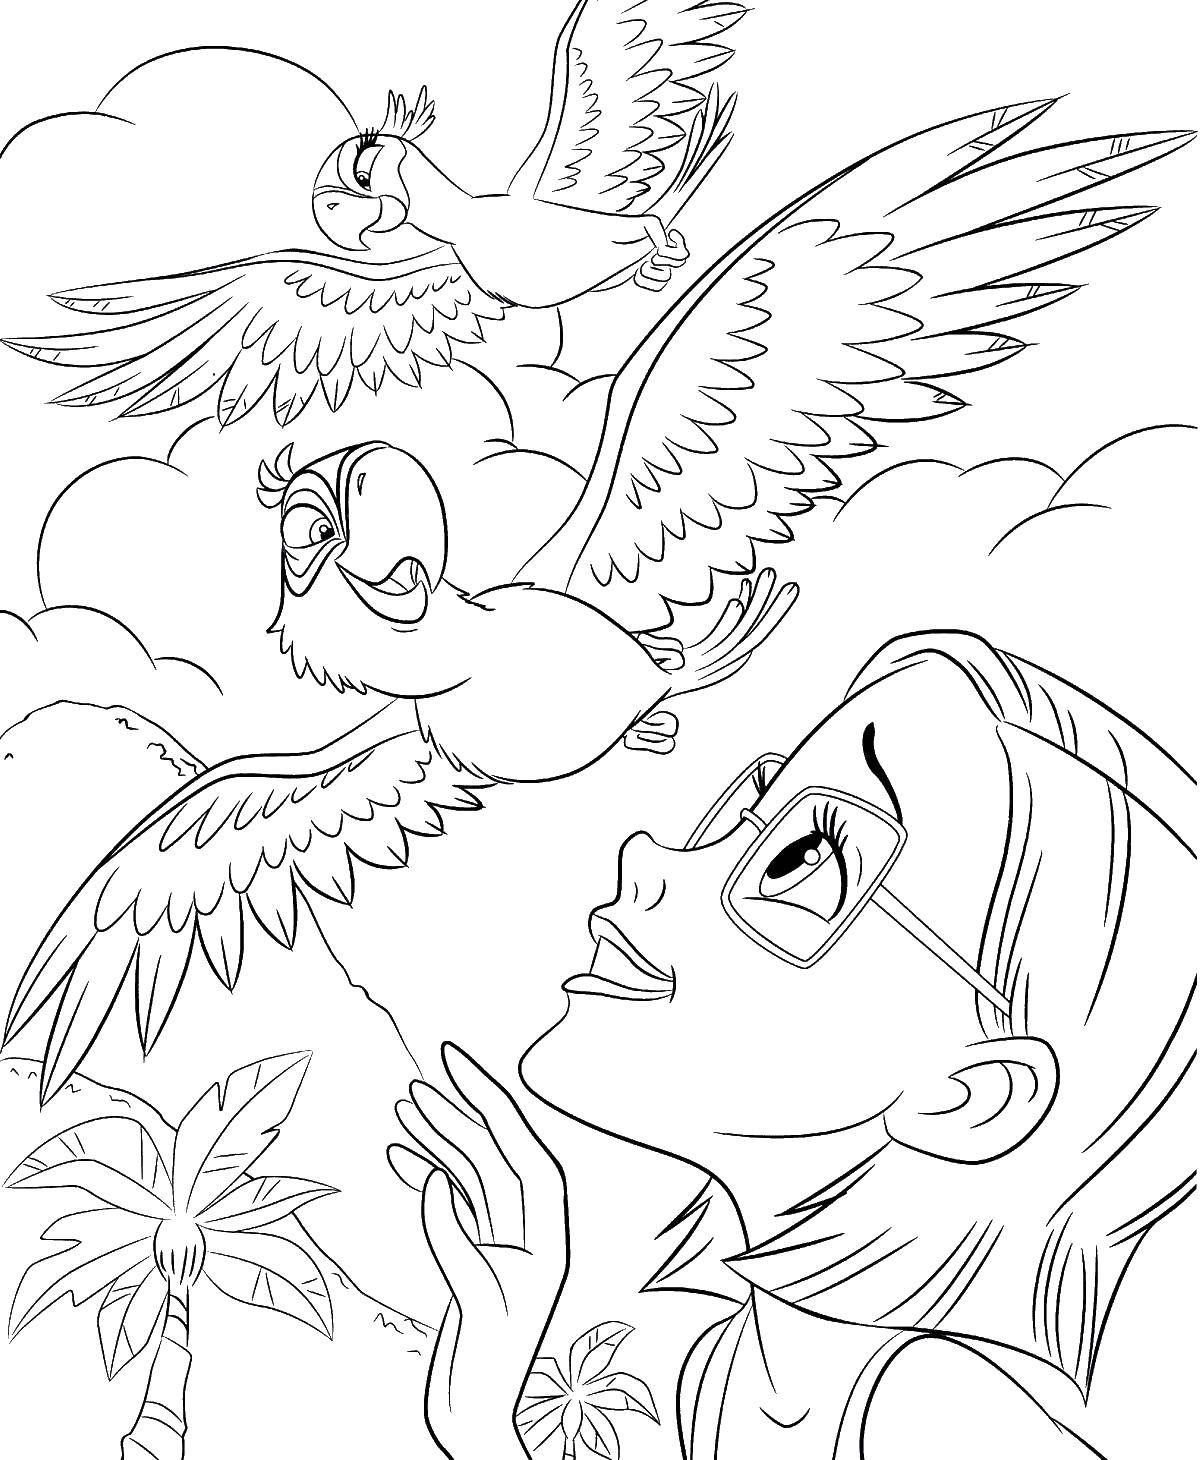 Опис: розмальовки  Лінда радіє голубчику і жемчужинке. Категорія: ріо. Теги:  Лінда, Голубчику, папуга, Ріо.